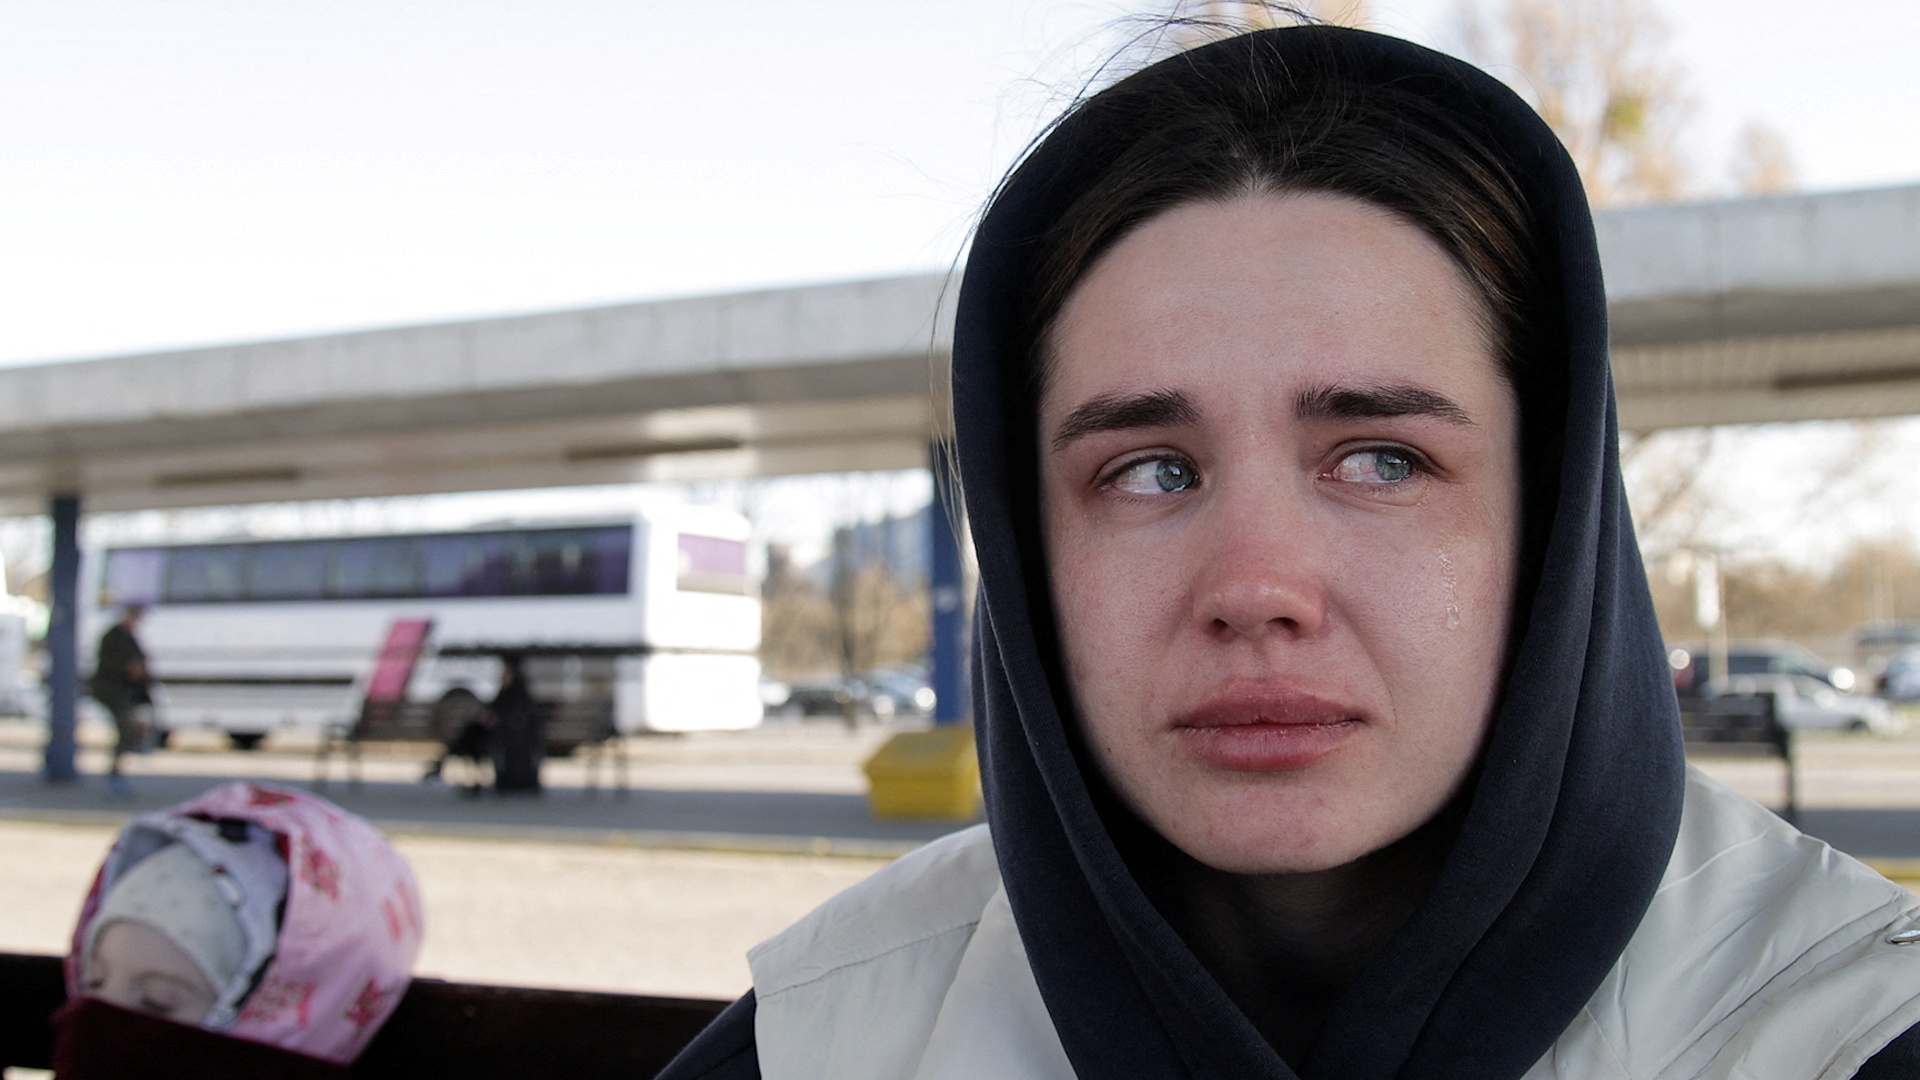 25-летняя Анжелика Марченко из Ивано-Франковска ждет автобуса на вокзале в Варшаве. Польша. 28 марта 2022 года. Фото Kuba Stezycki/REUTERS/Scanpix/LETA